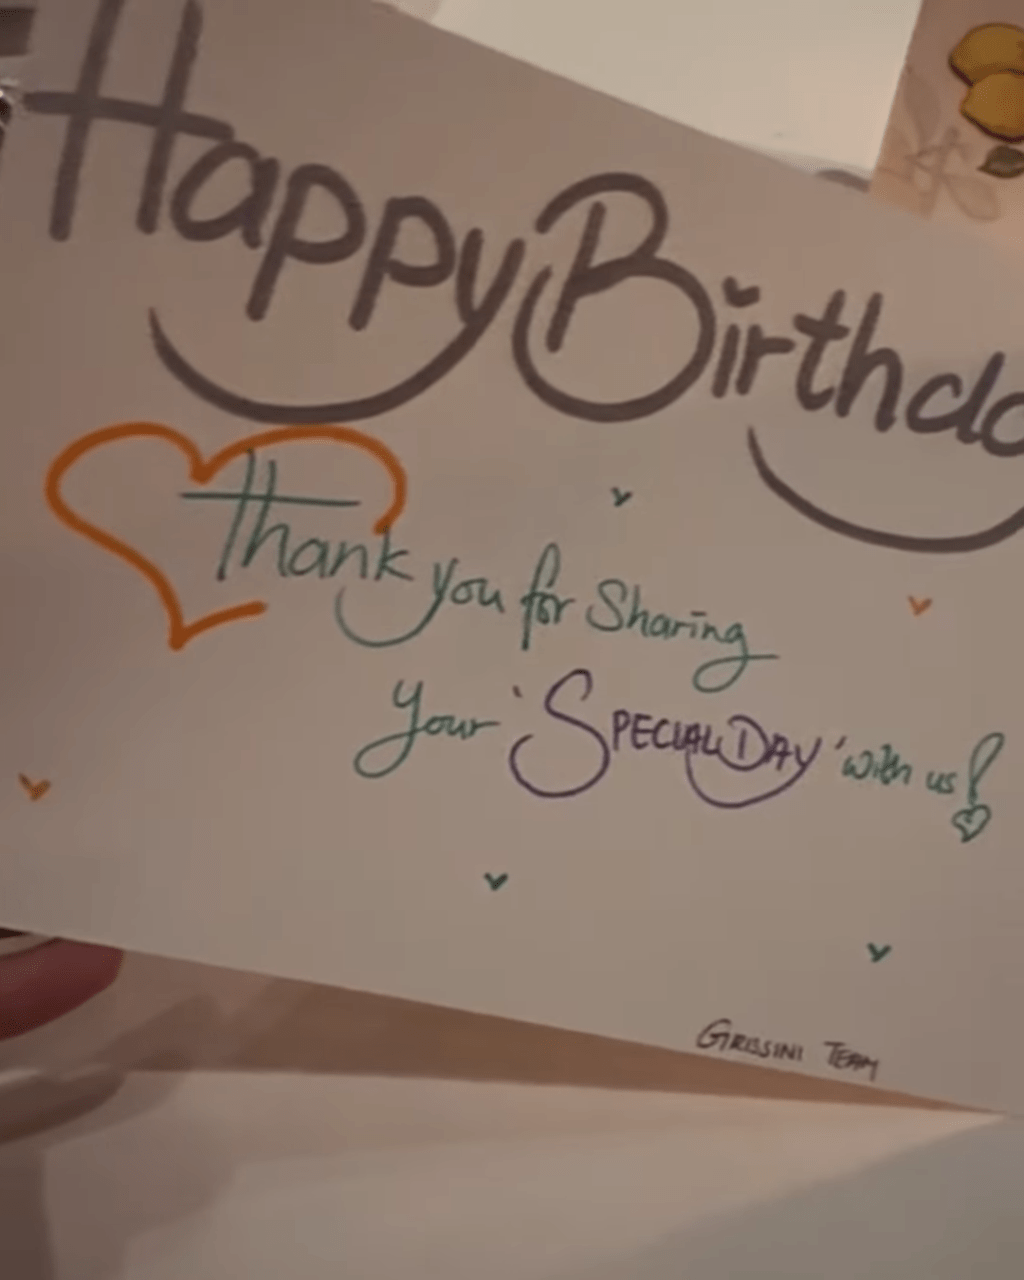 黄心颖最后上载了一段影片，当中影着一张生日卡。